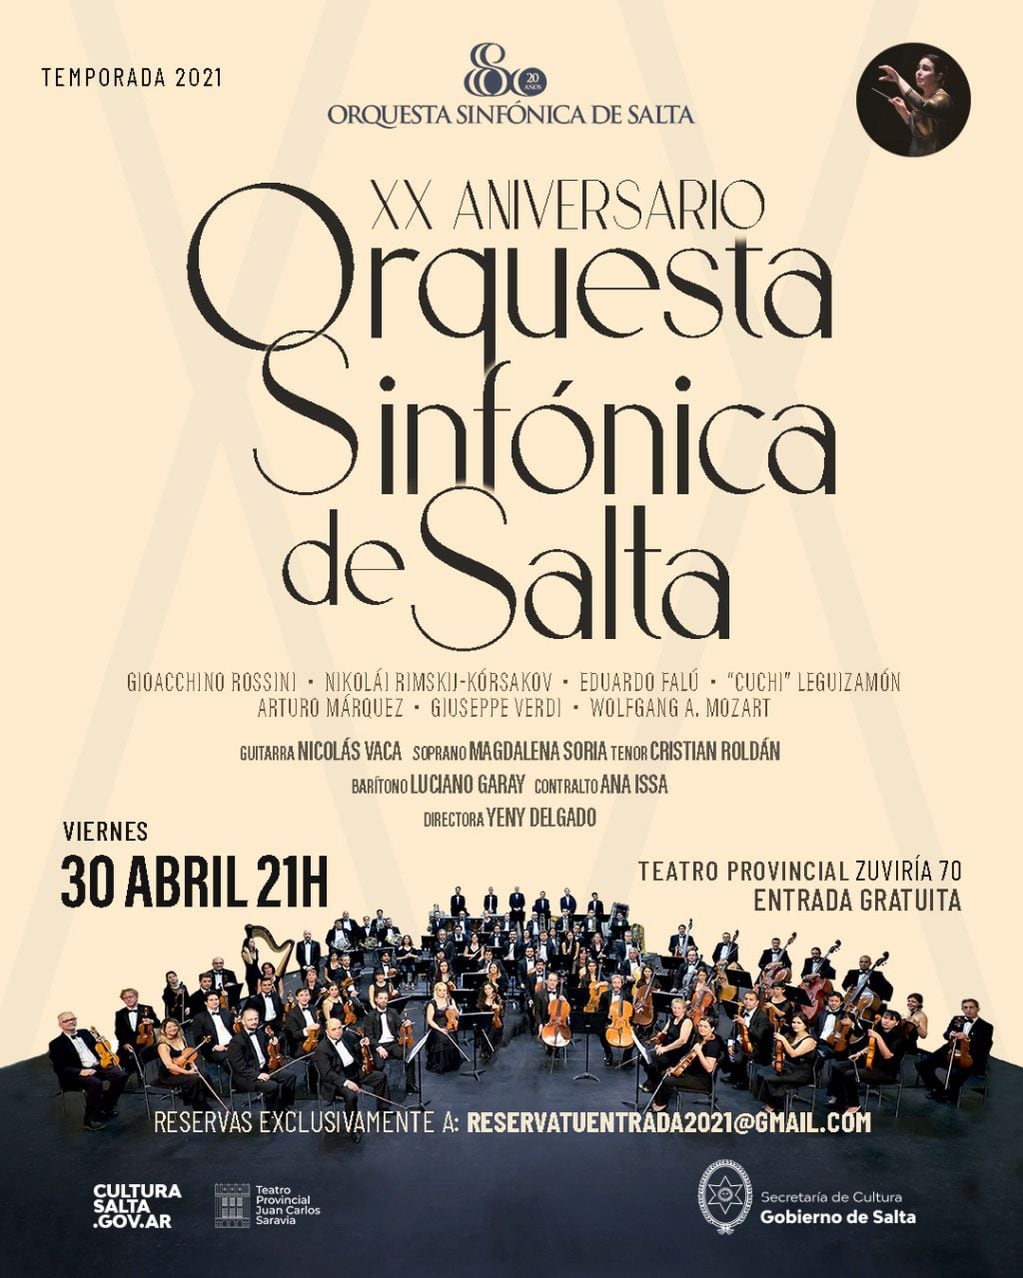 La cita es el viernes 30 de abril a las 21 en el Teatro Provincial Juan Carlos Saravia, con reserva previa.